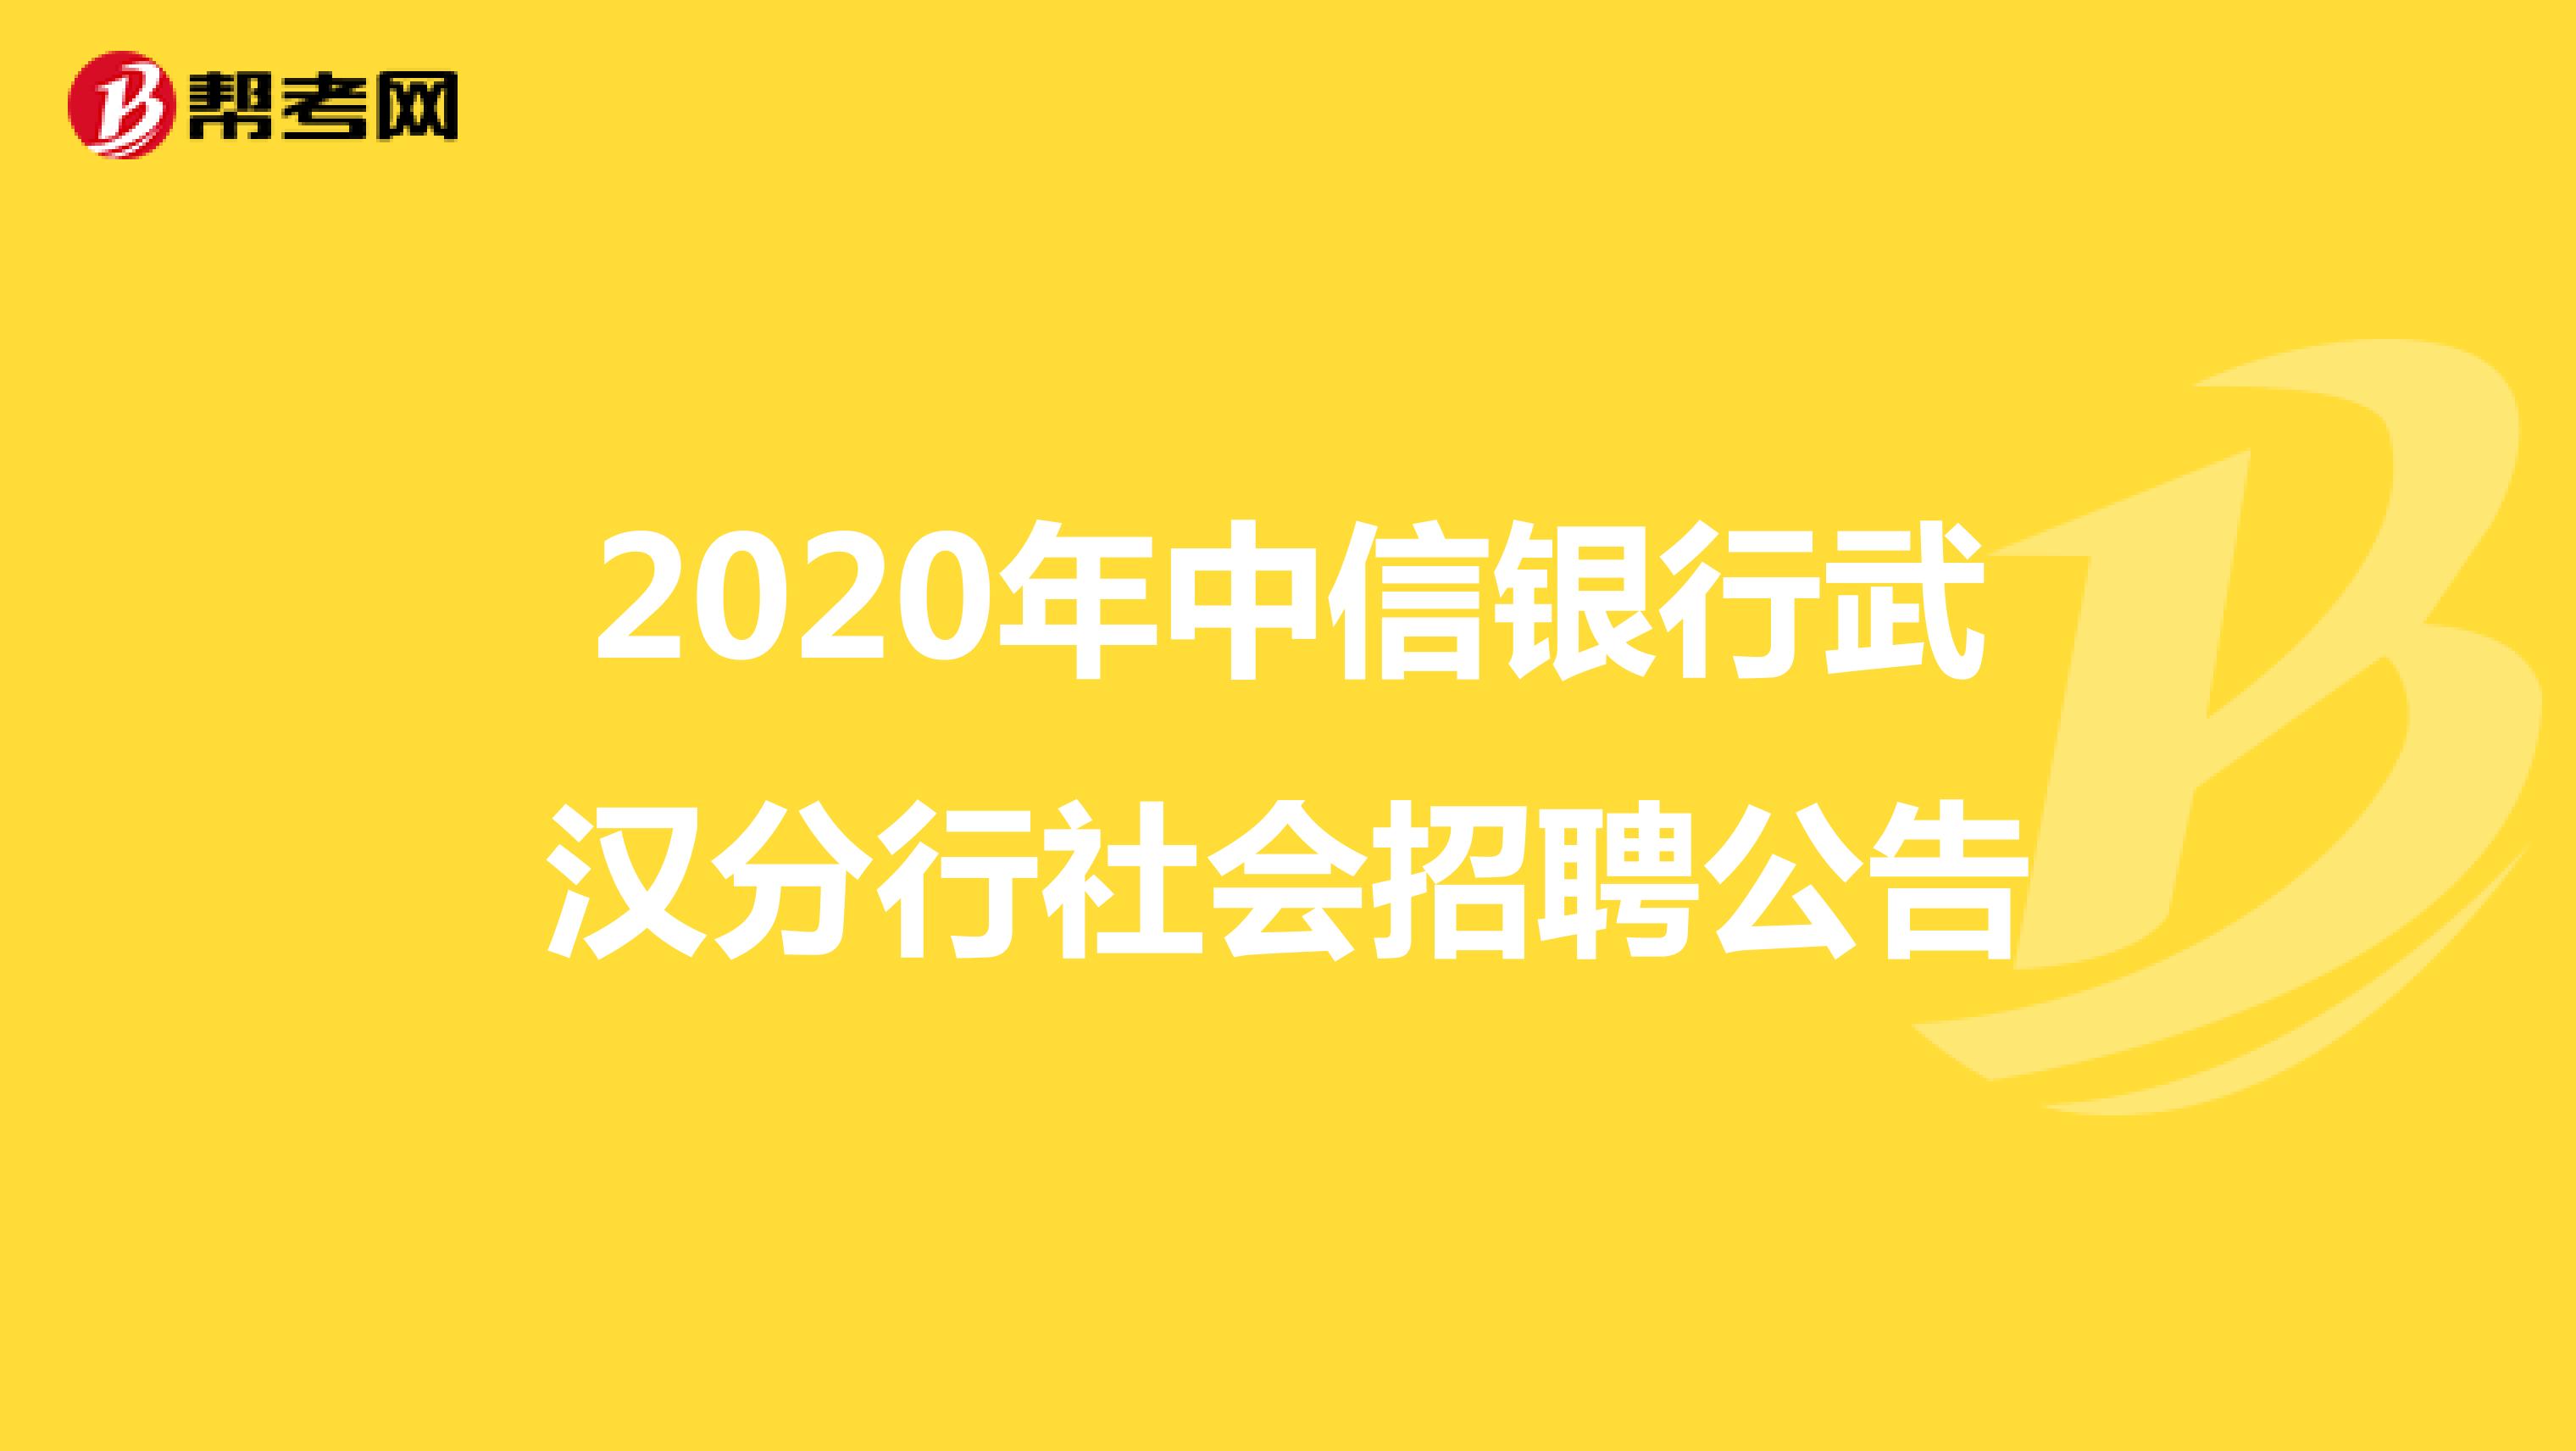 2020年中信银行武汉分行社会招聘公告